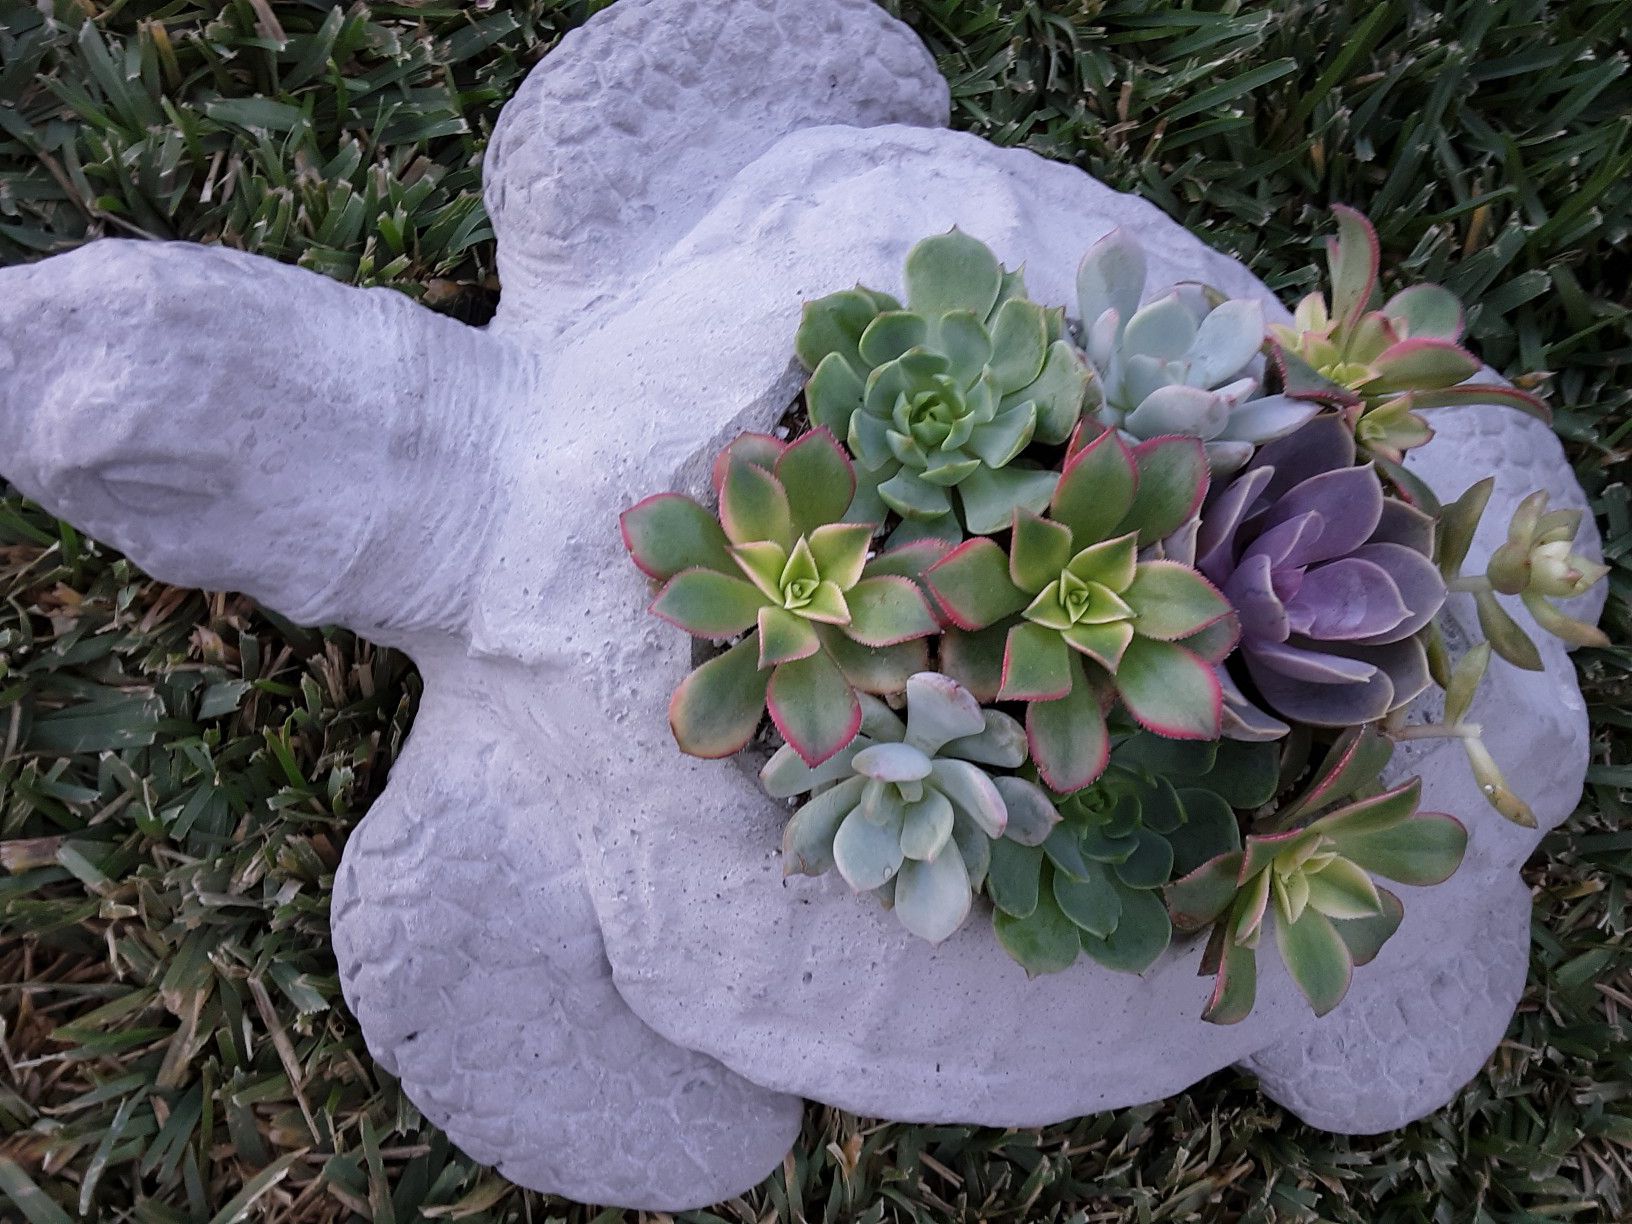 18" cement turtle planter with succulent plants